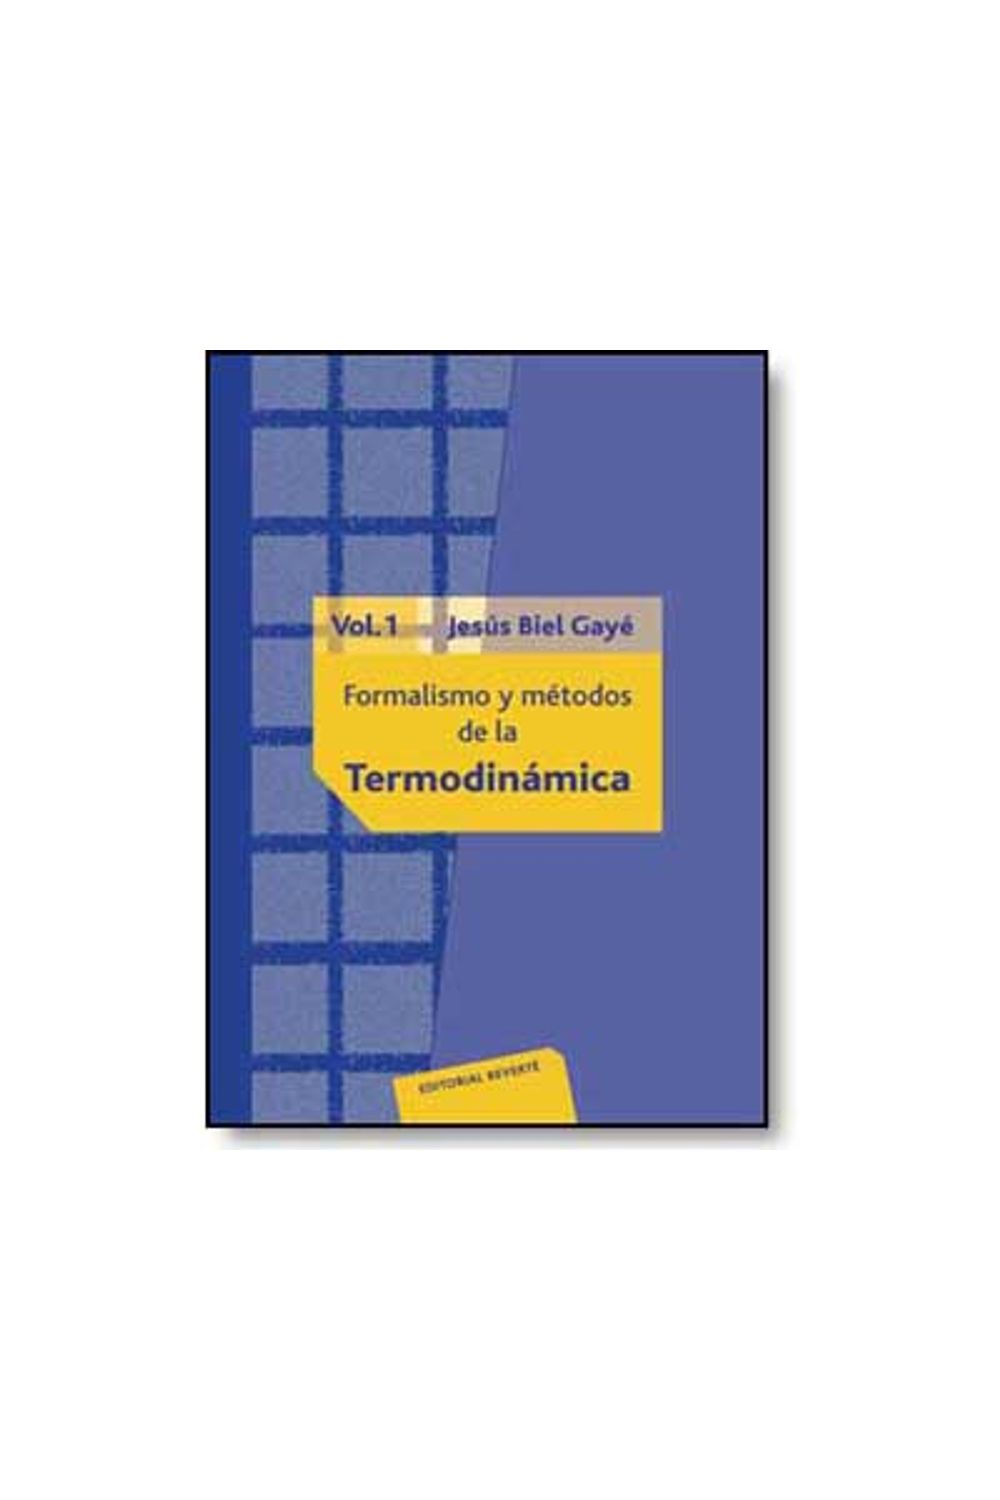 bw-formalismos-y-meacutetodos-de-la-termodinaacutemica-vol-1-reverte-9788429190755